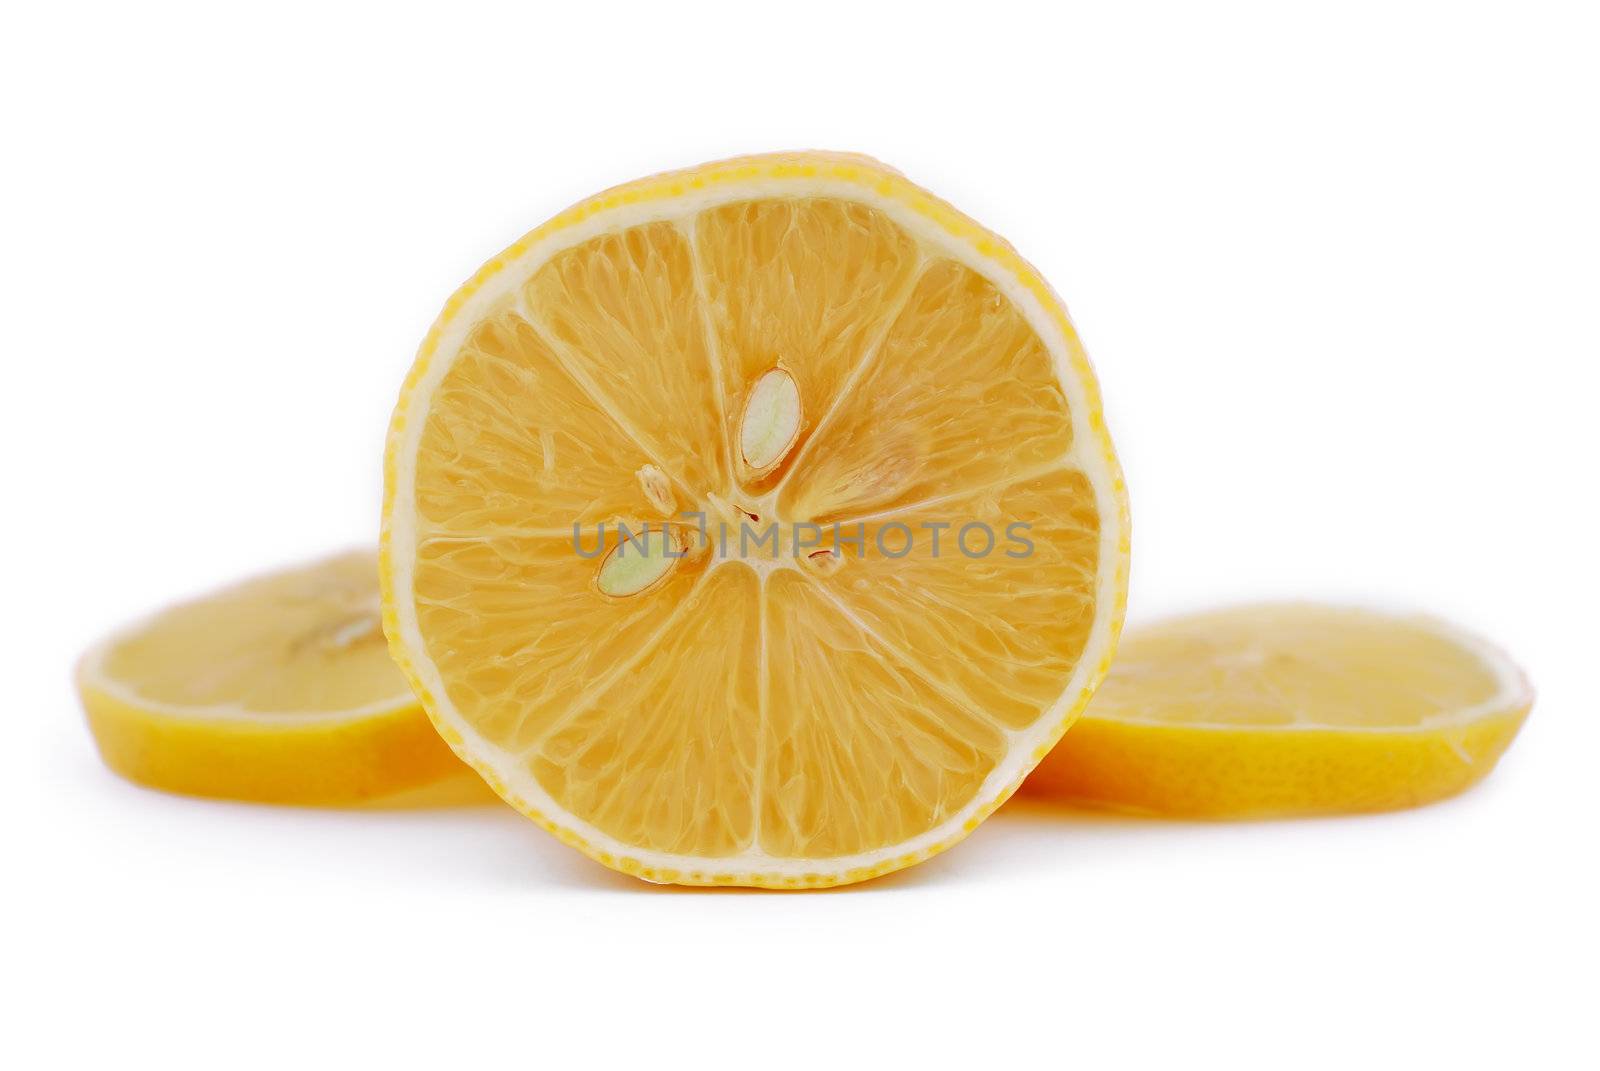 chopped lemon slices on white background